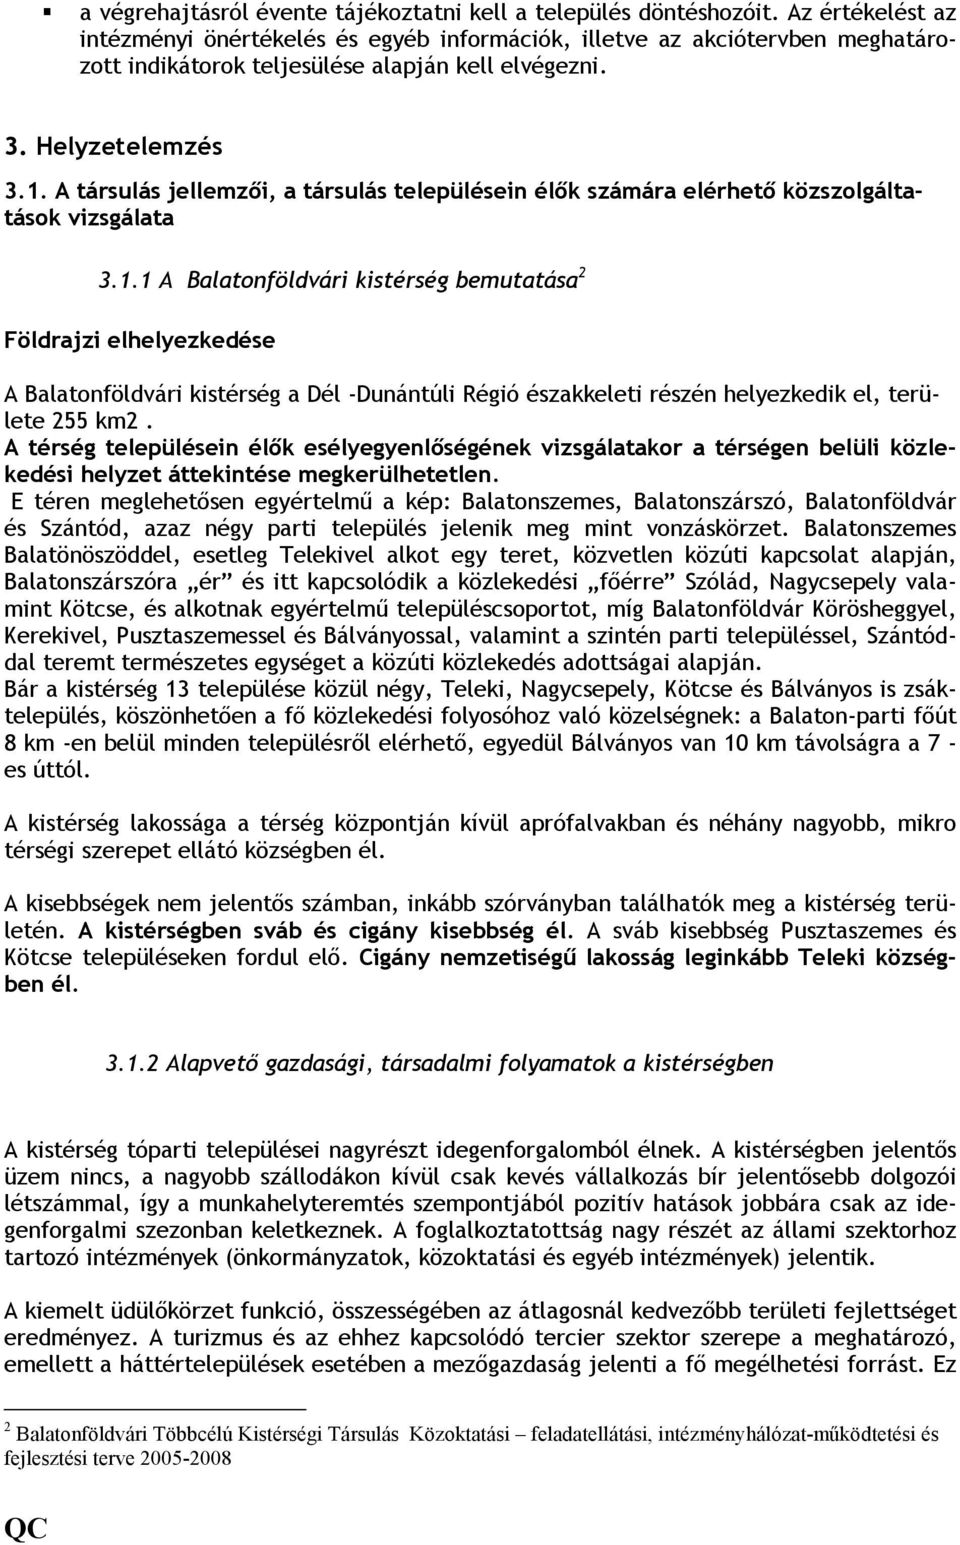 A társulás jellemzıi, a társulás településein élık számára elérhetı közszolgáltatások vizsgálata 3.1.